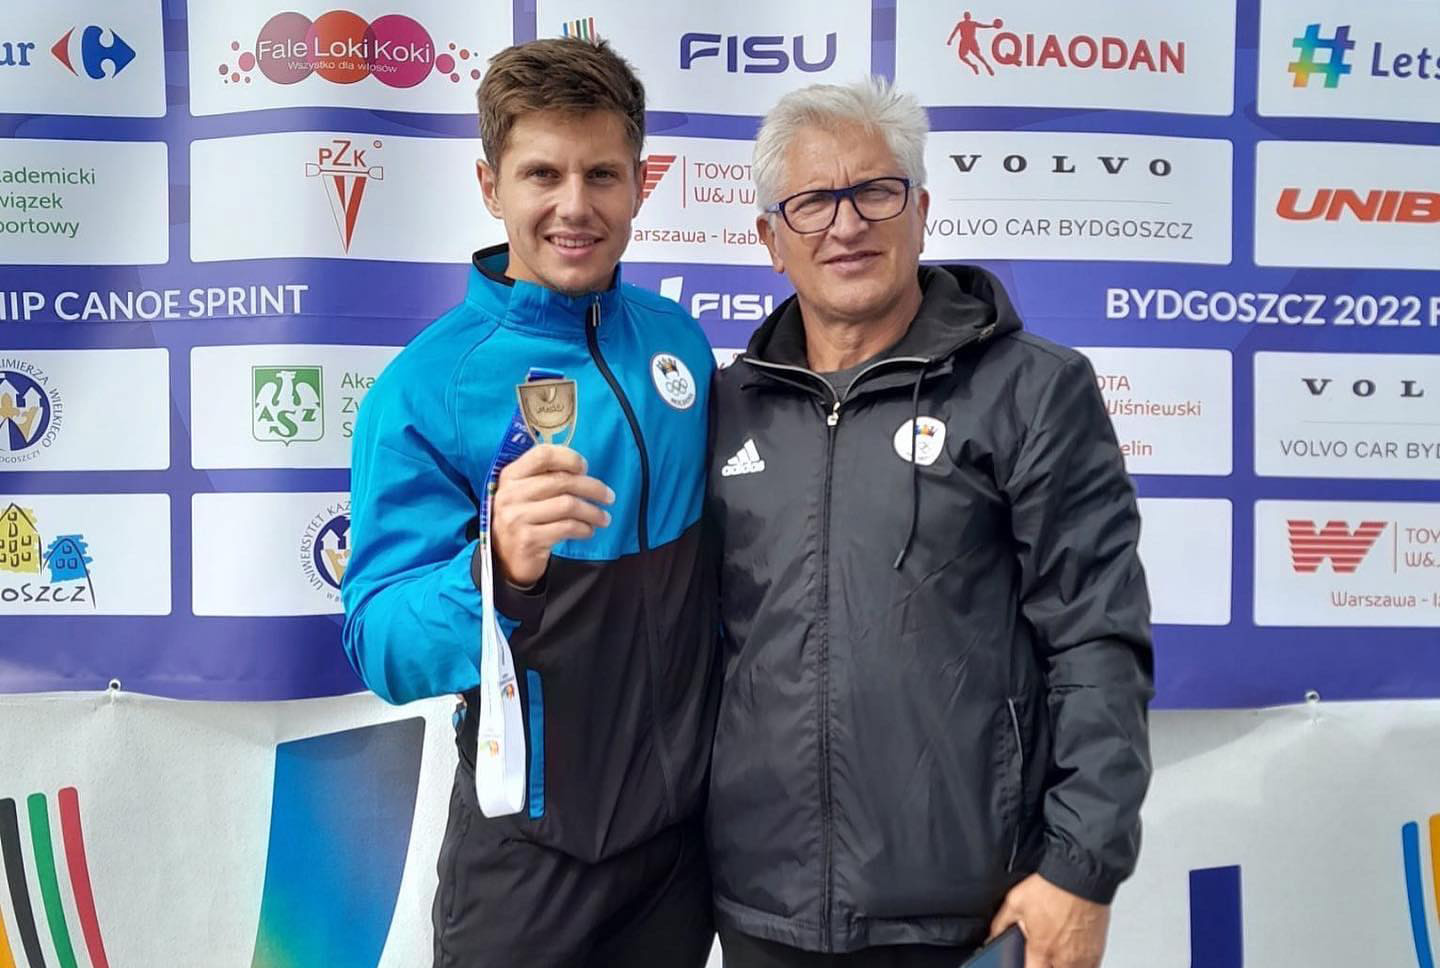 Каноист из Молдовы завоевал три золотых медали на чемпионате мира по академической гребле